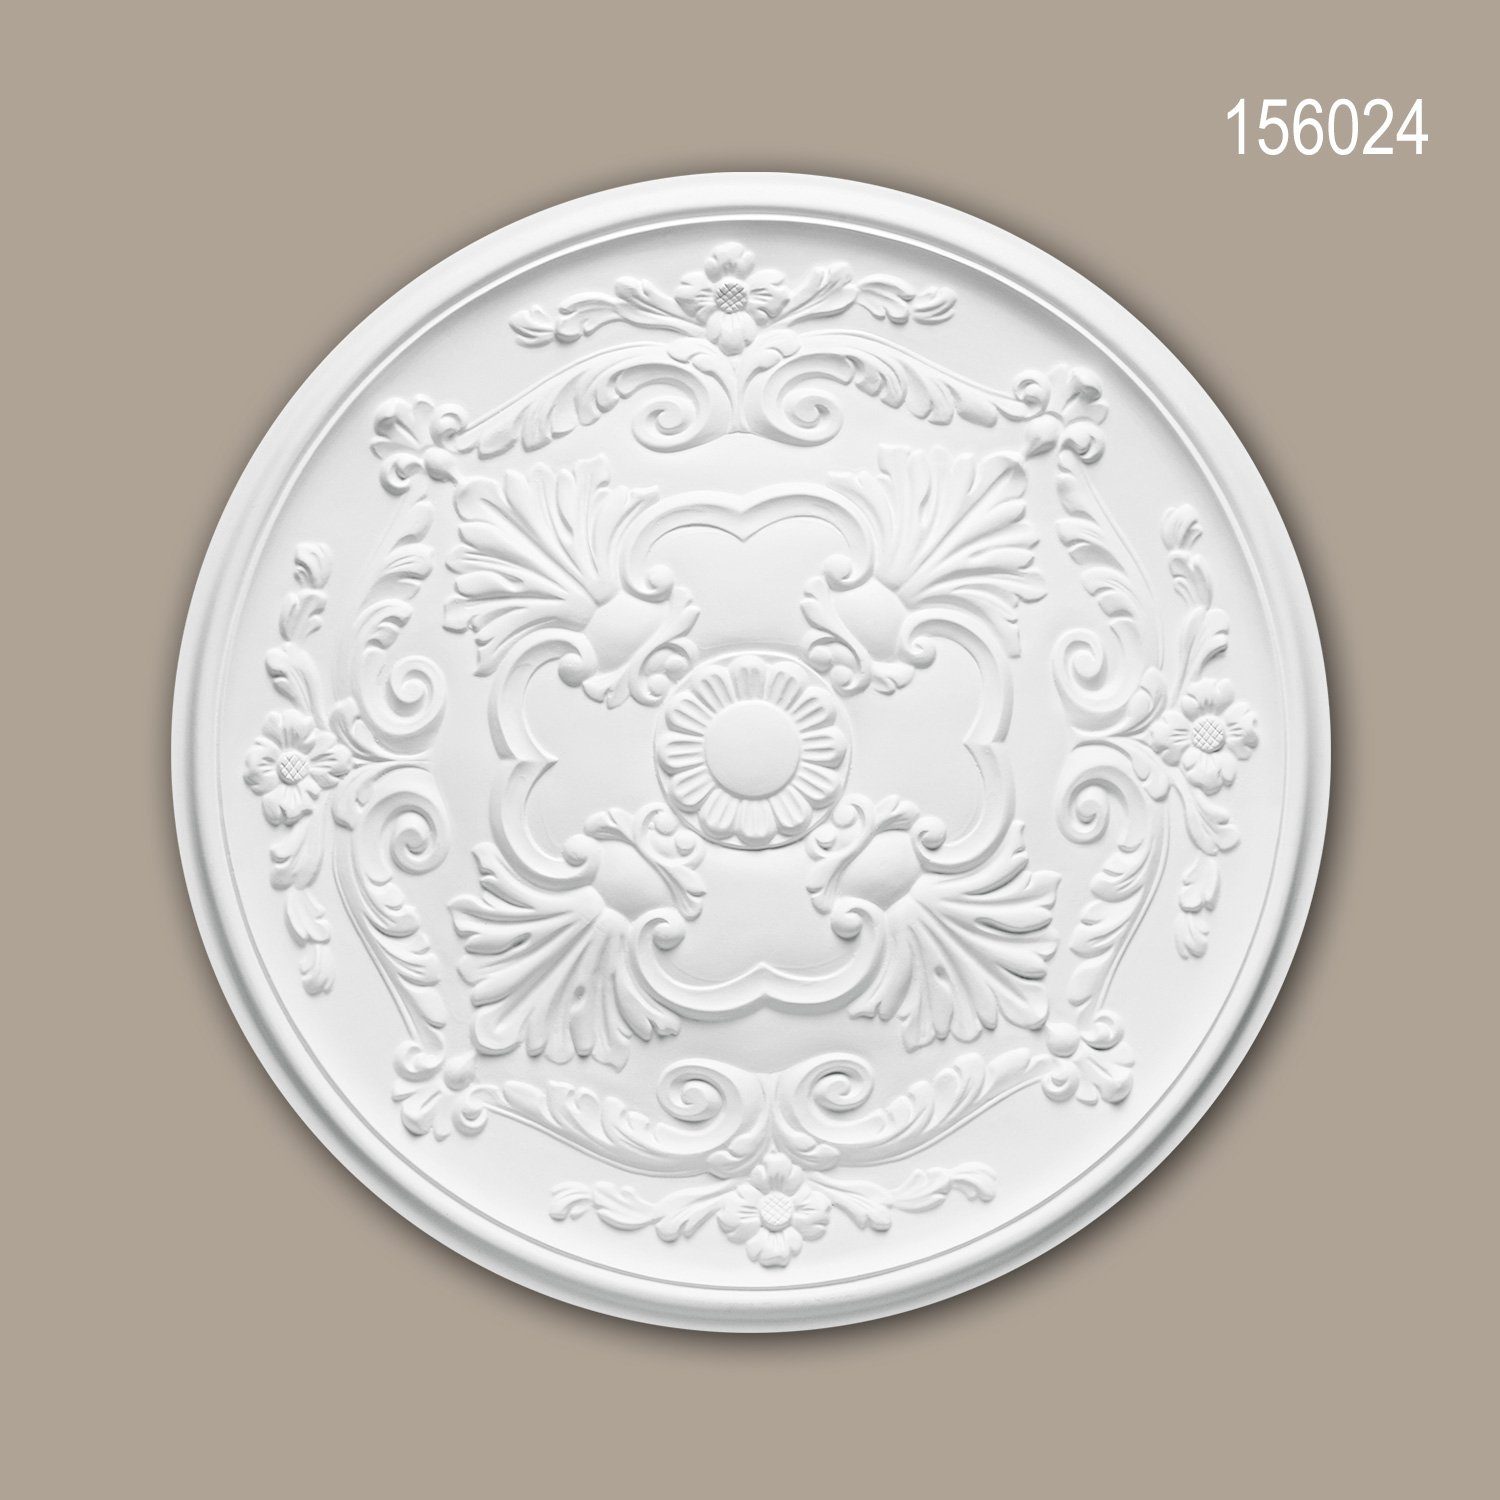 Profhome Decken-Rosette 156024 (Rosette, 1 St., Deckenrosette, Medallion, Stuckrosette, Deckenelement, Zierelement, Durchmesser 49,6 cm), weiß, vorgrundiert, Stil: Neo-Empire